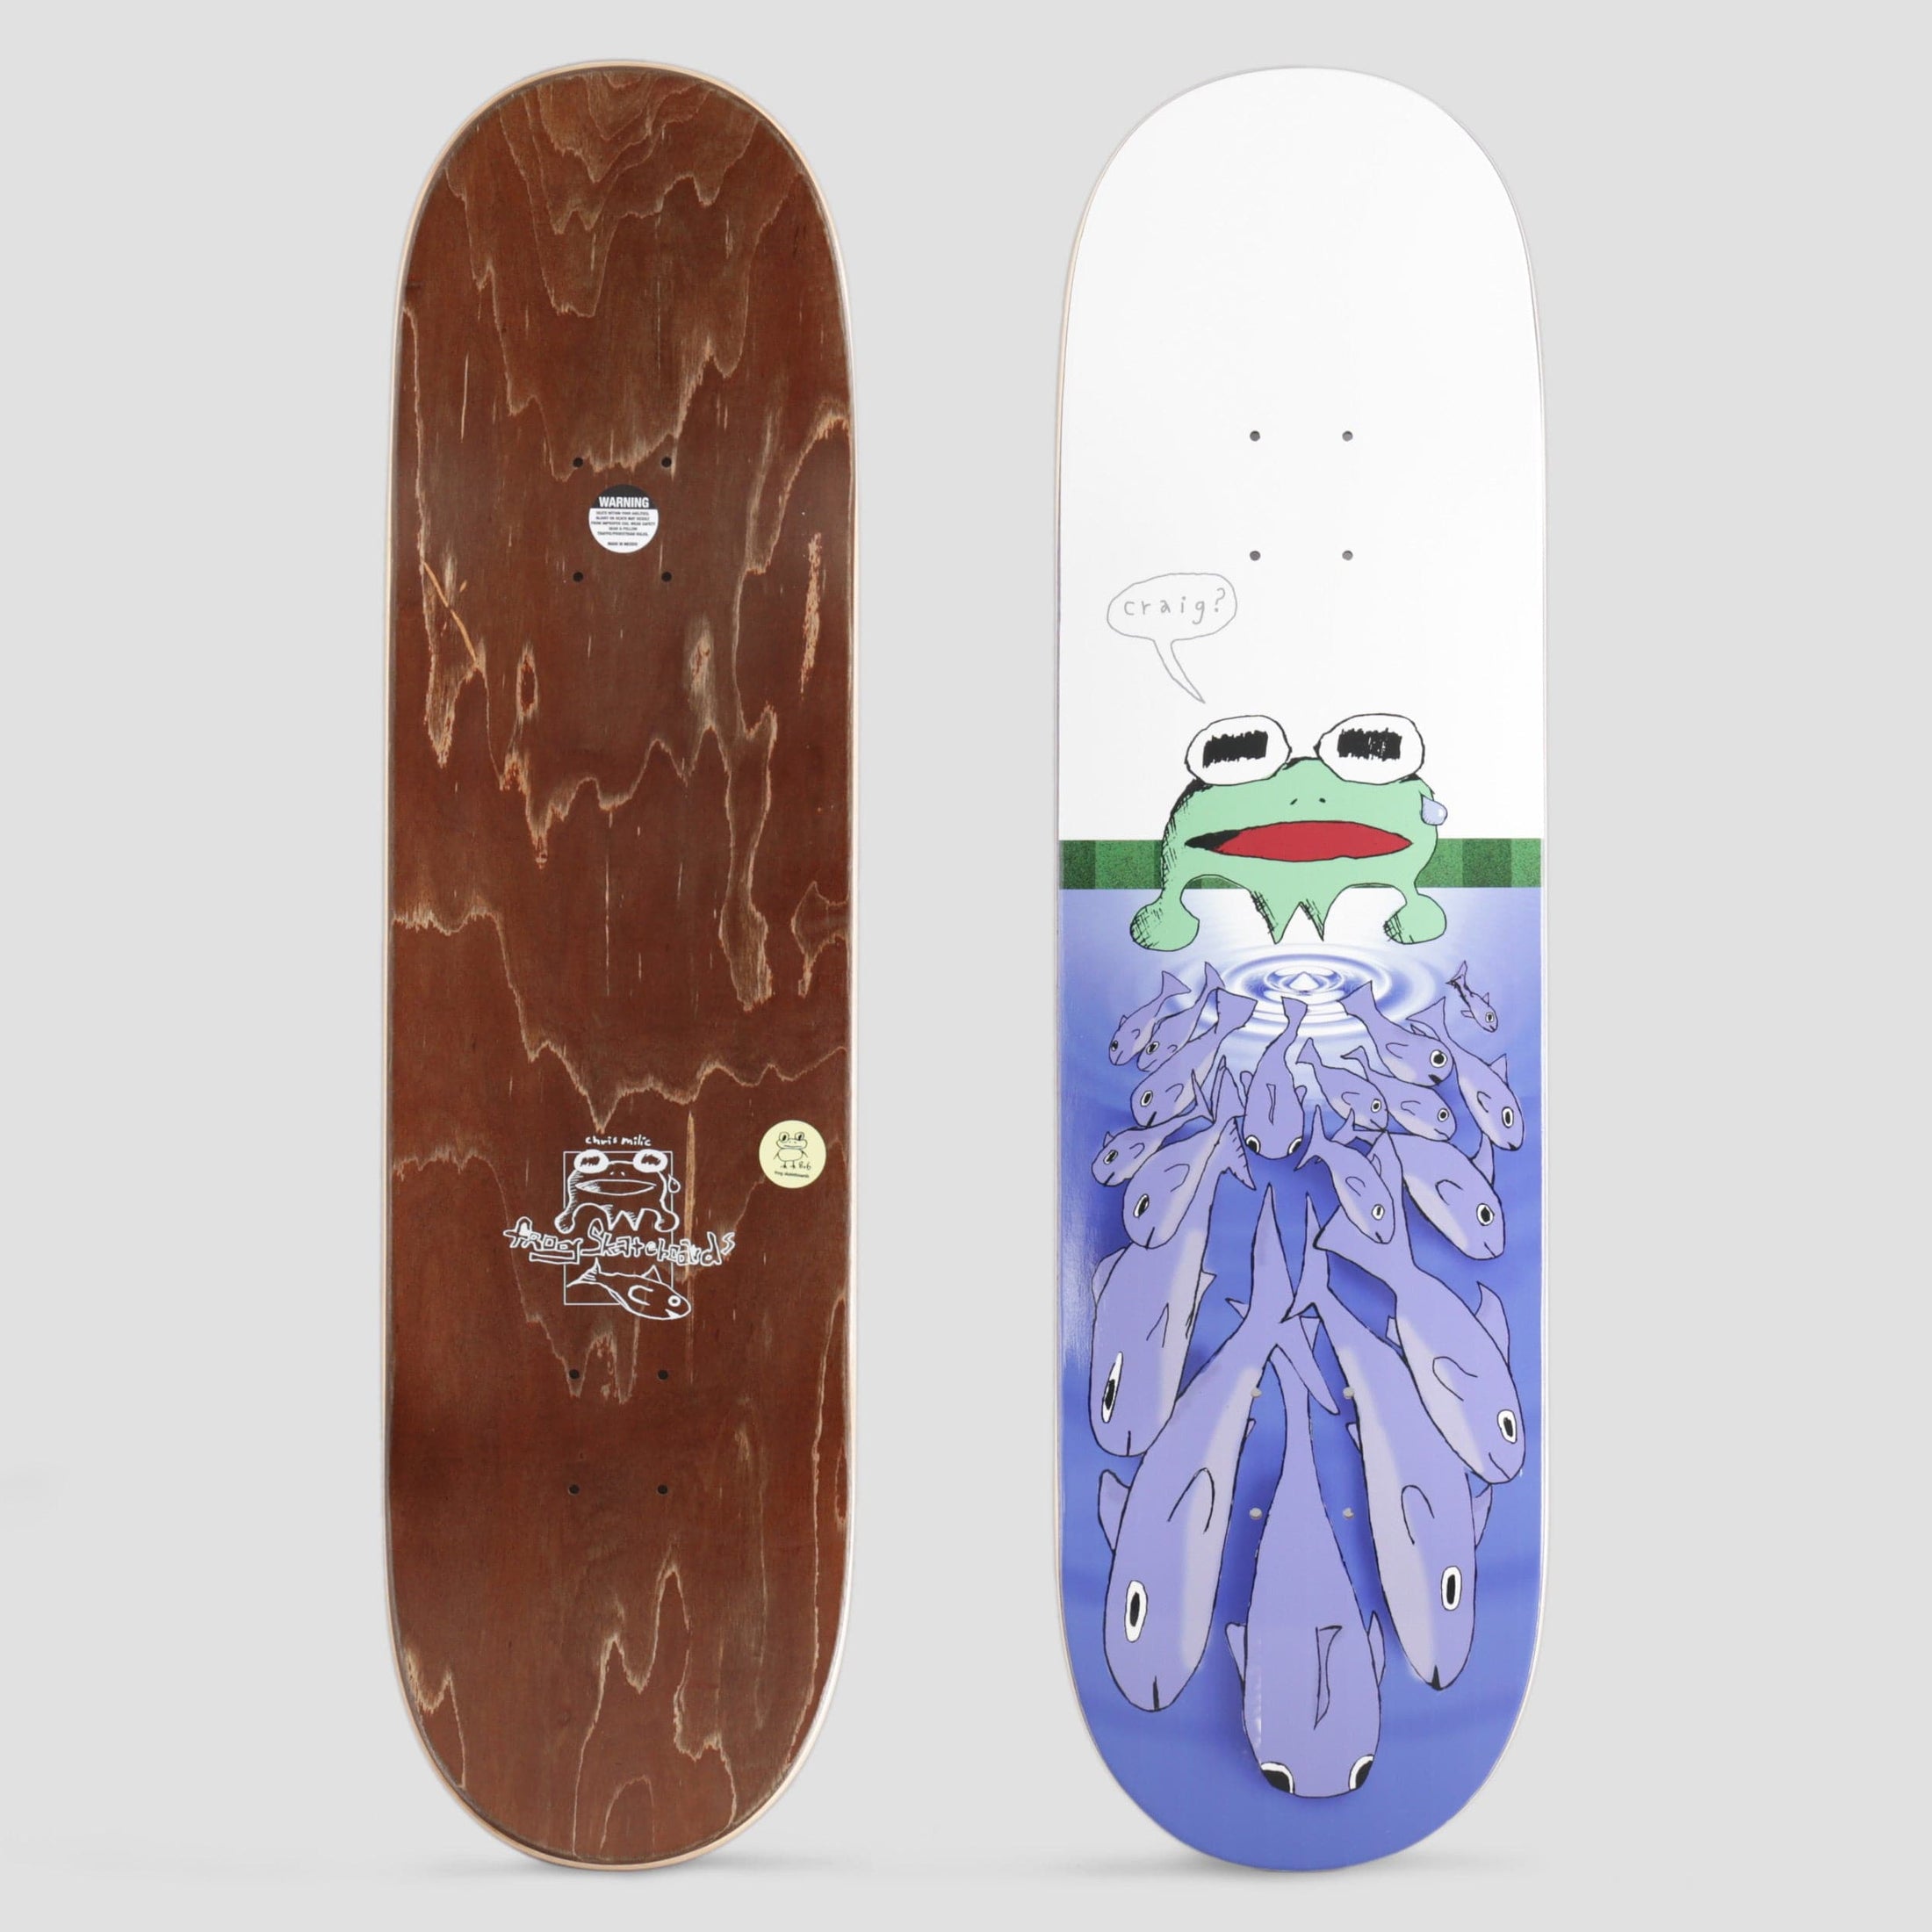 Frog 8.6 I Quit Chris Milic Skateboard Deck Blue